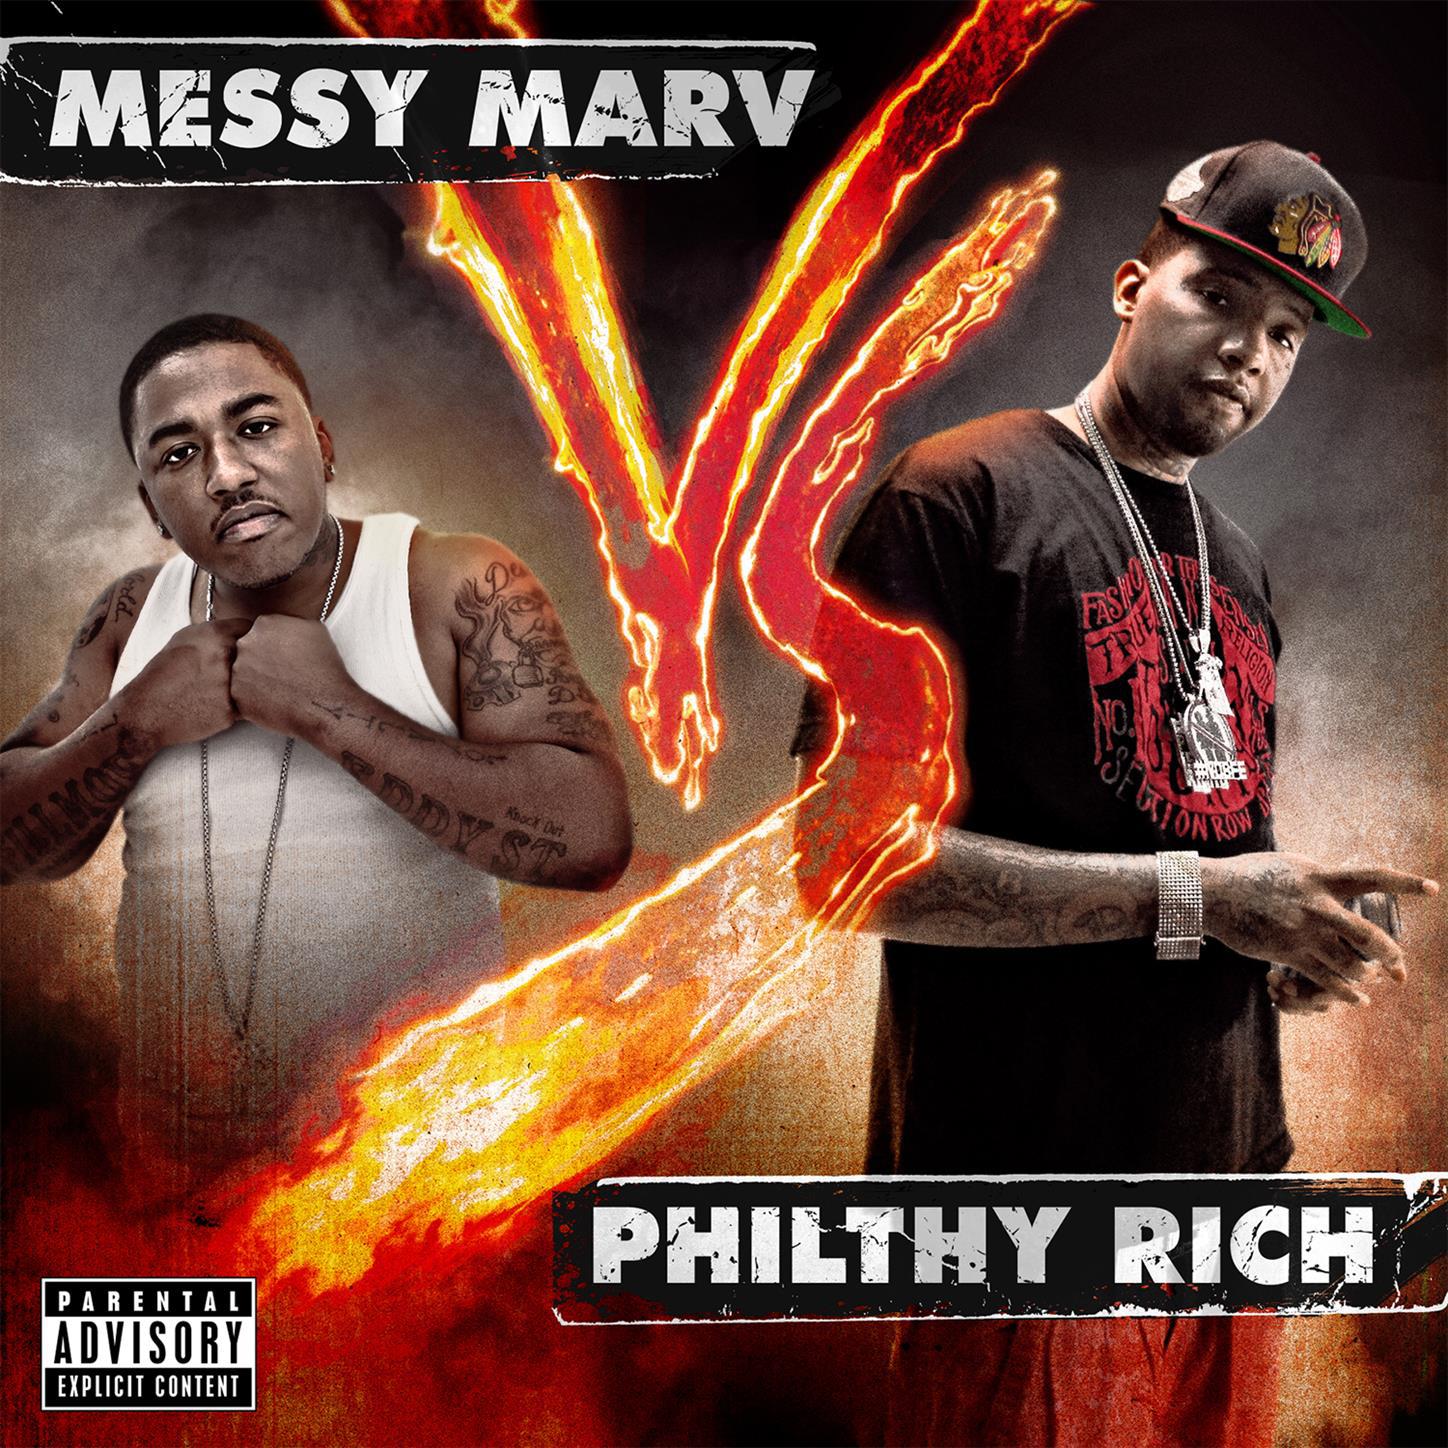 Philthy Rich vs. Messy Marv